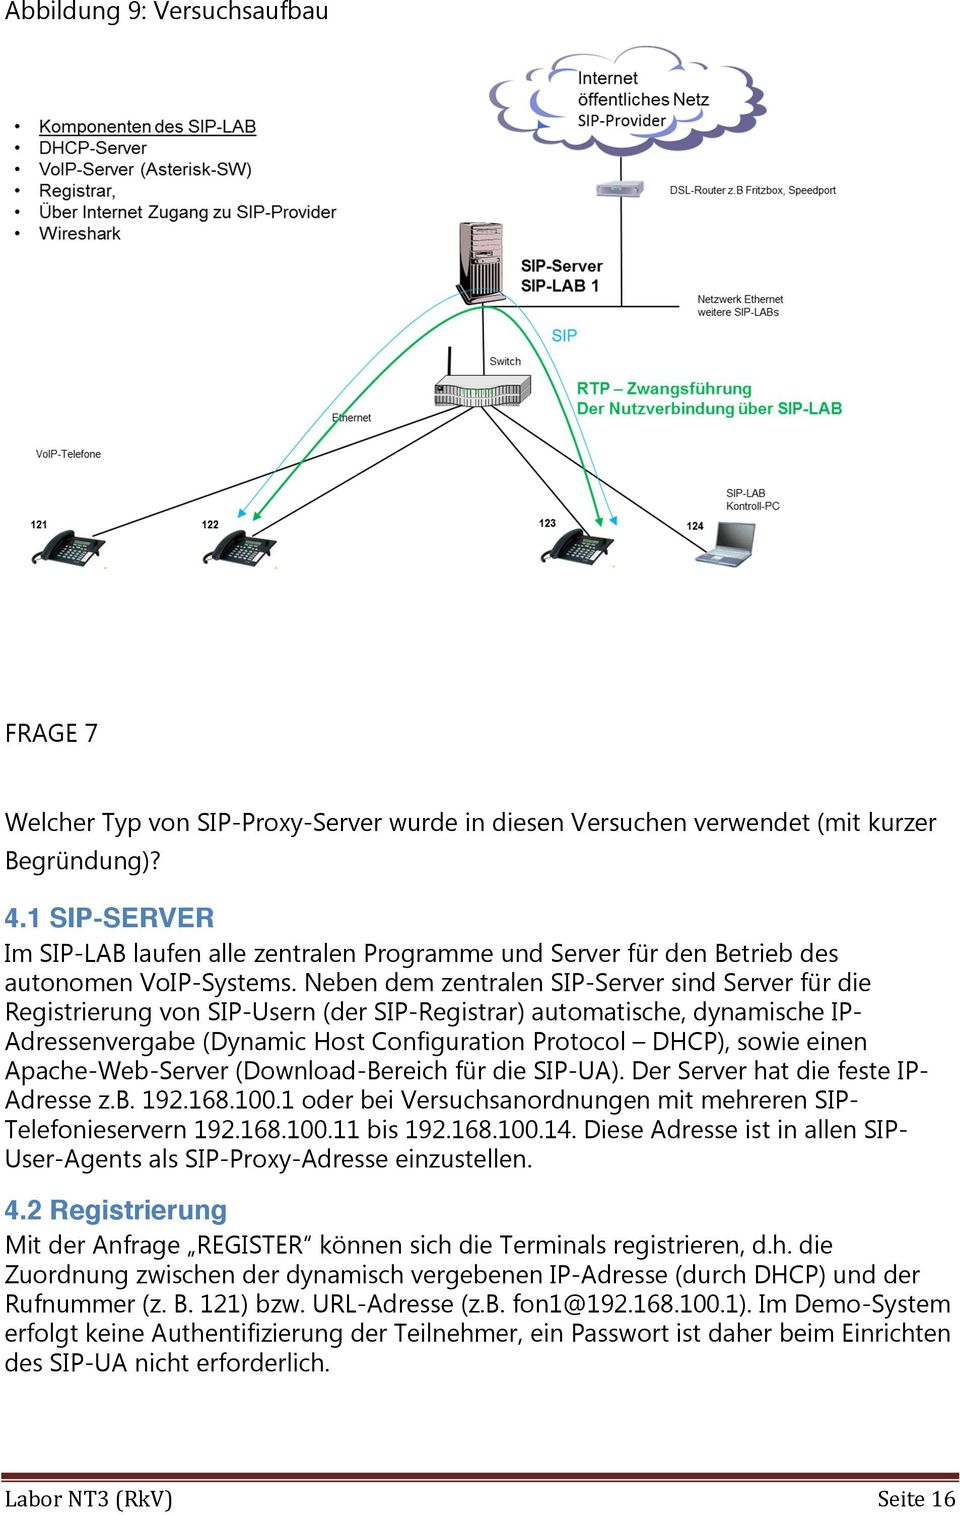 Neben dem zentralen SIP-Server sind Server für die Registrierung von SIP-Usern (der SIP-Registrar) automatische, dynamische IP- Adressenvergabe (Dynamic Host Configuration Protocol DHCP), sowie einen